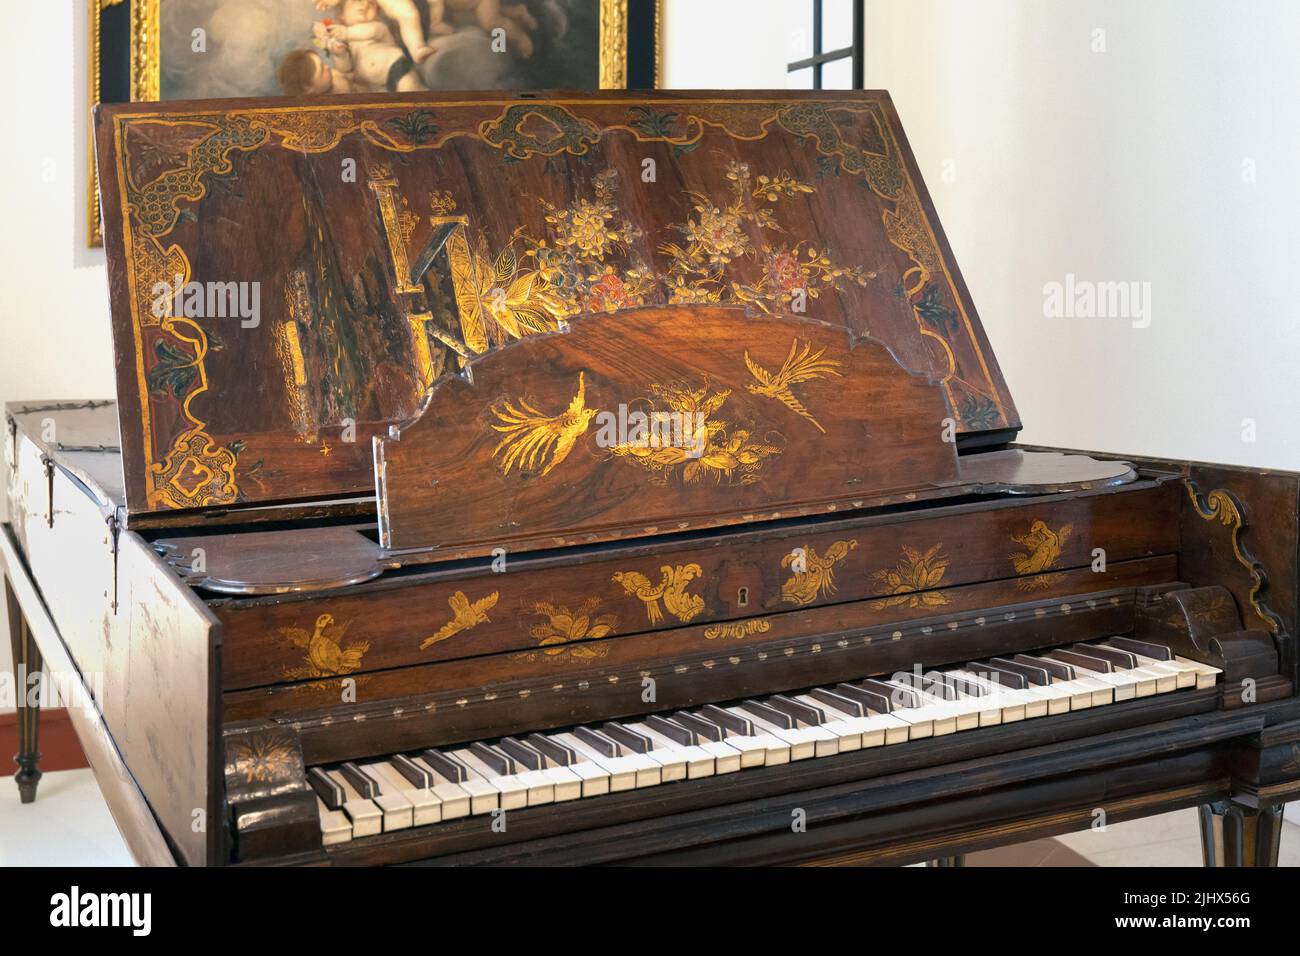 Piano, um 1750, wird Francisco Perez Mirabel zugeschrieben, der Mitte des 18.. Jahrhunderts in Sevilla, Spanien, tätig war. Ausgestellt im Museo de Belles Stockfoto